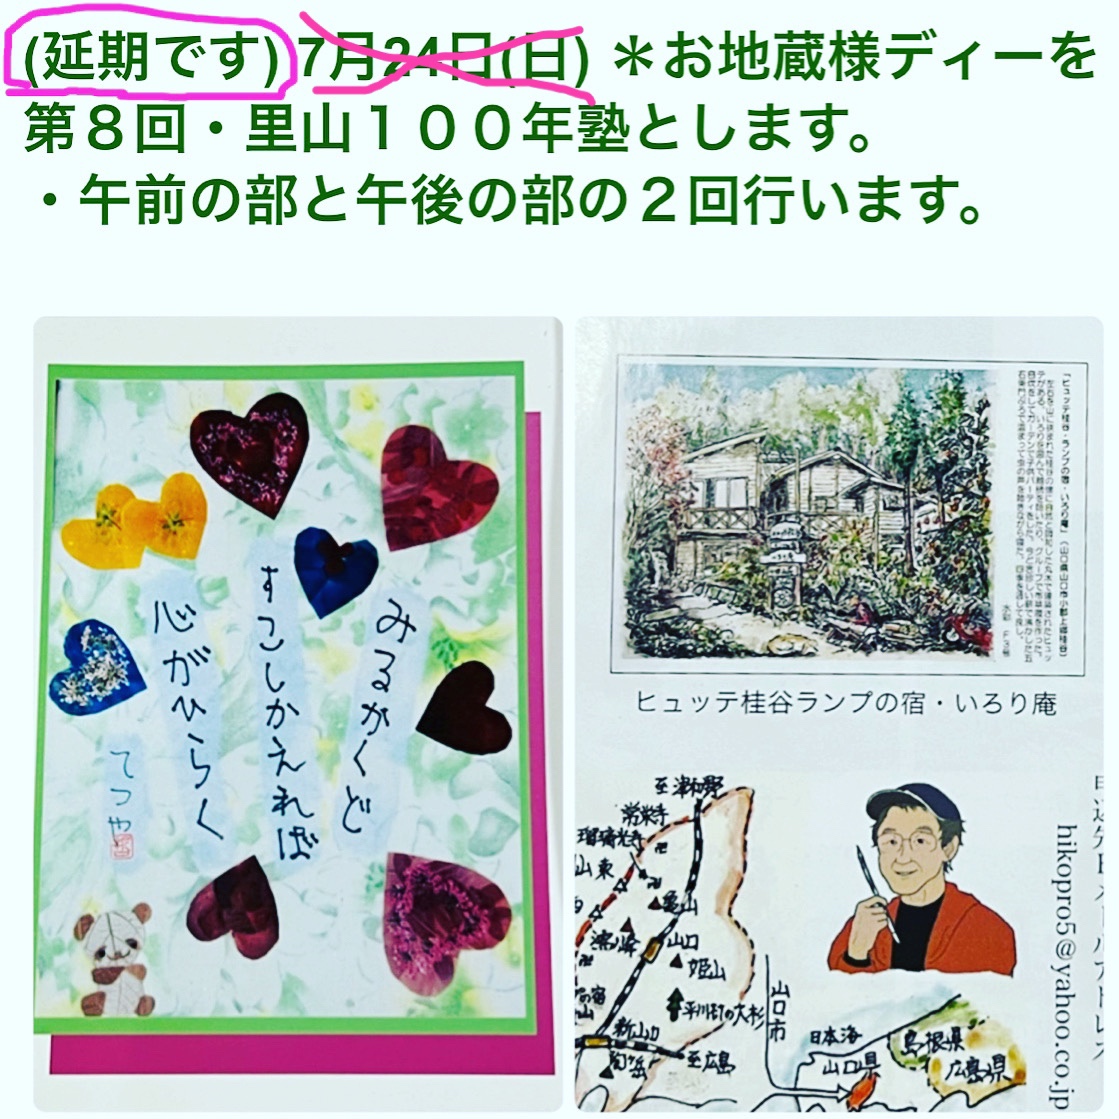 岡﨑悦子さん哲也君作の絵葉書と、香川彦一さんの描かれたランプの宿(水彩画)